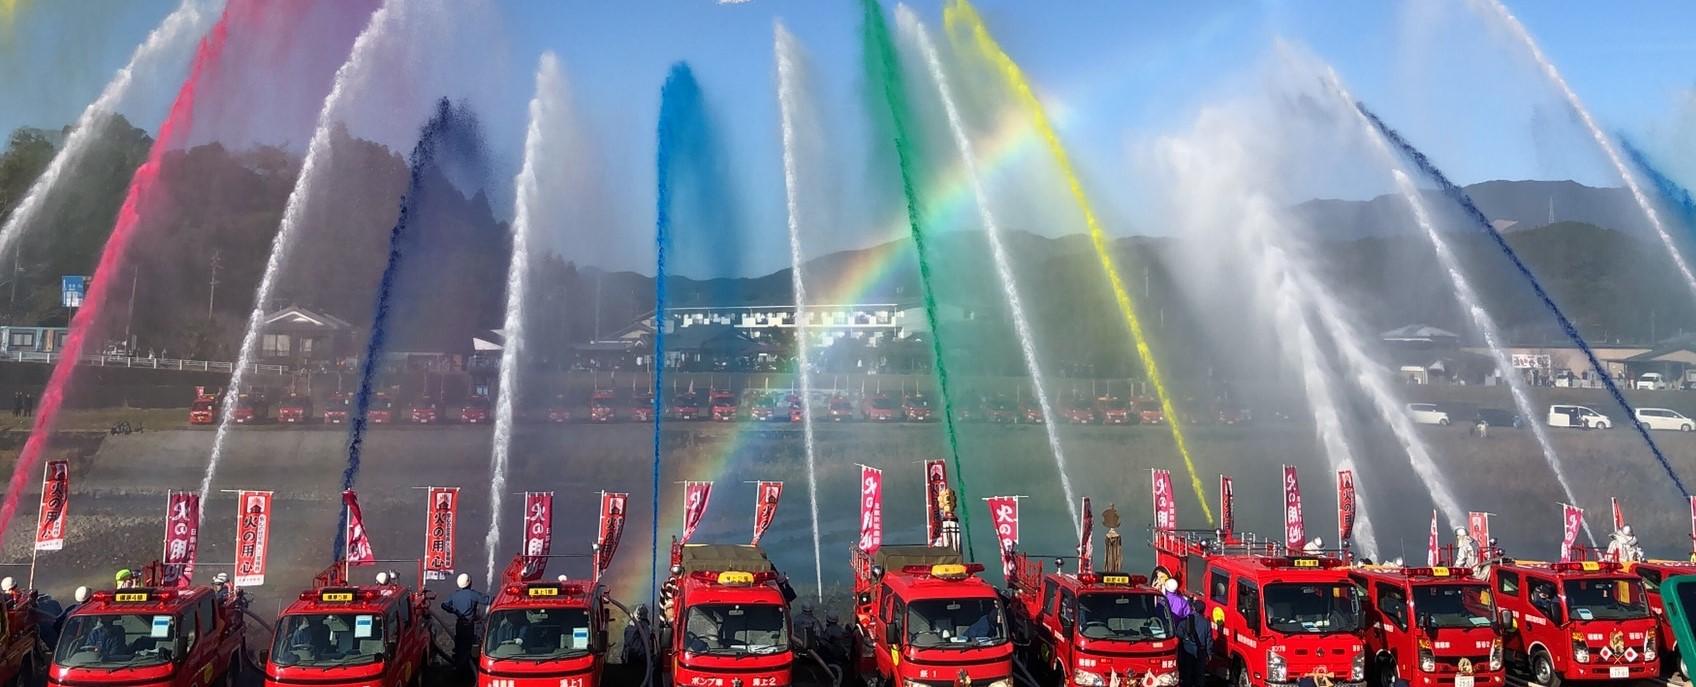 赤色のボディの消防車が横一列に並び、黄色や緑色などの水を一斉放水している 放水は色水を使用して七色のようである。背景には虹もある。